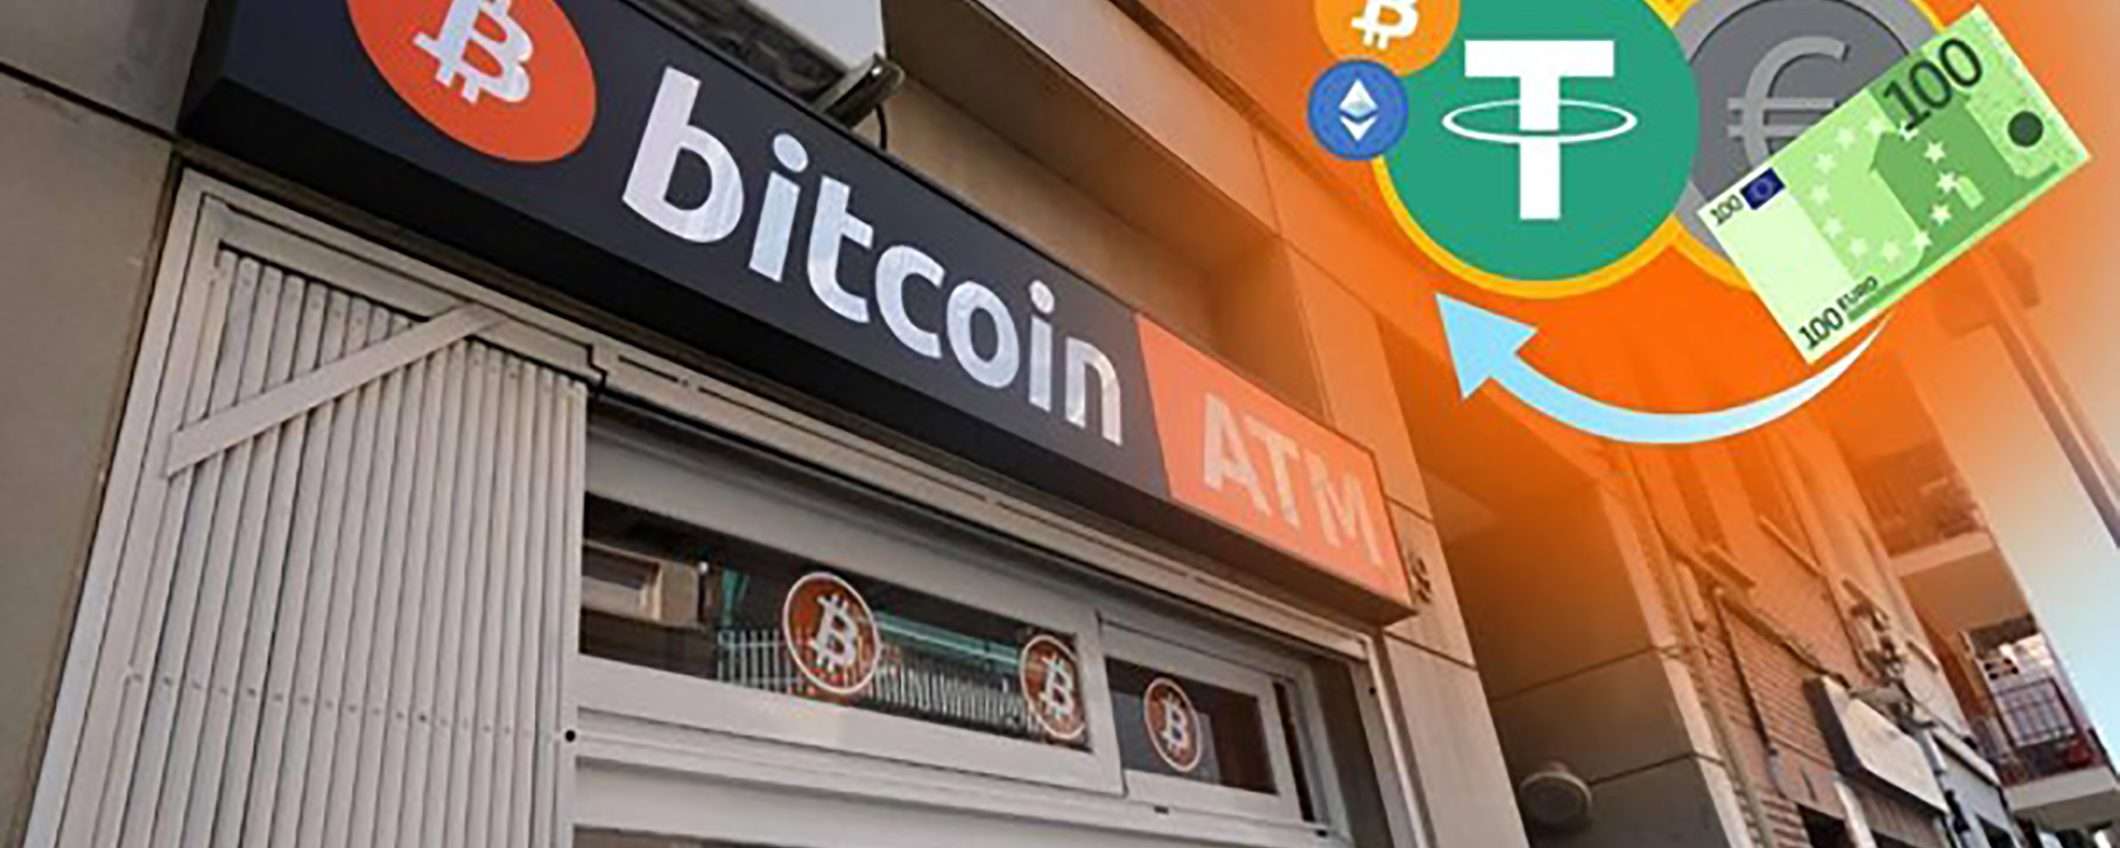 ATM Bitcoin a Roma - dove sono e come usarli?